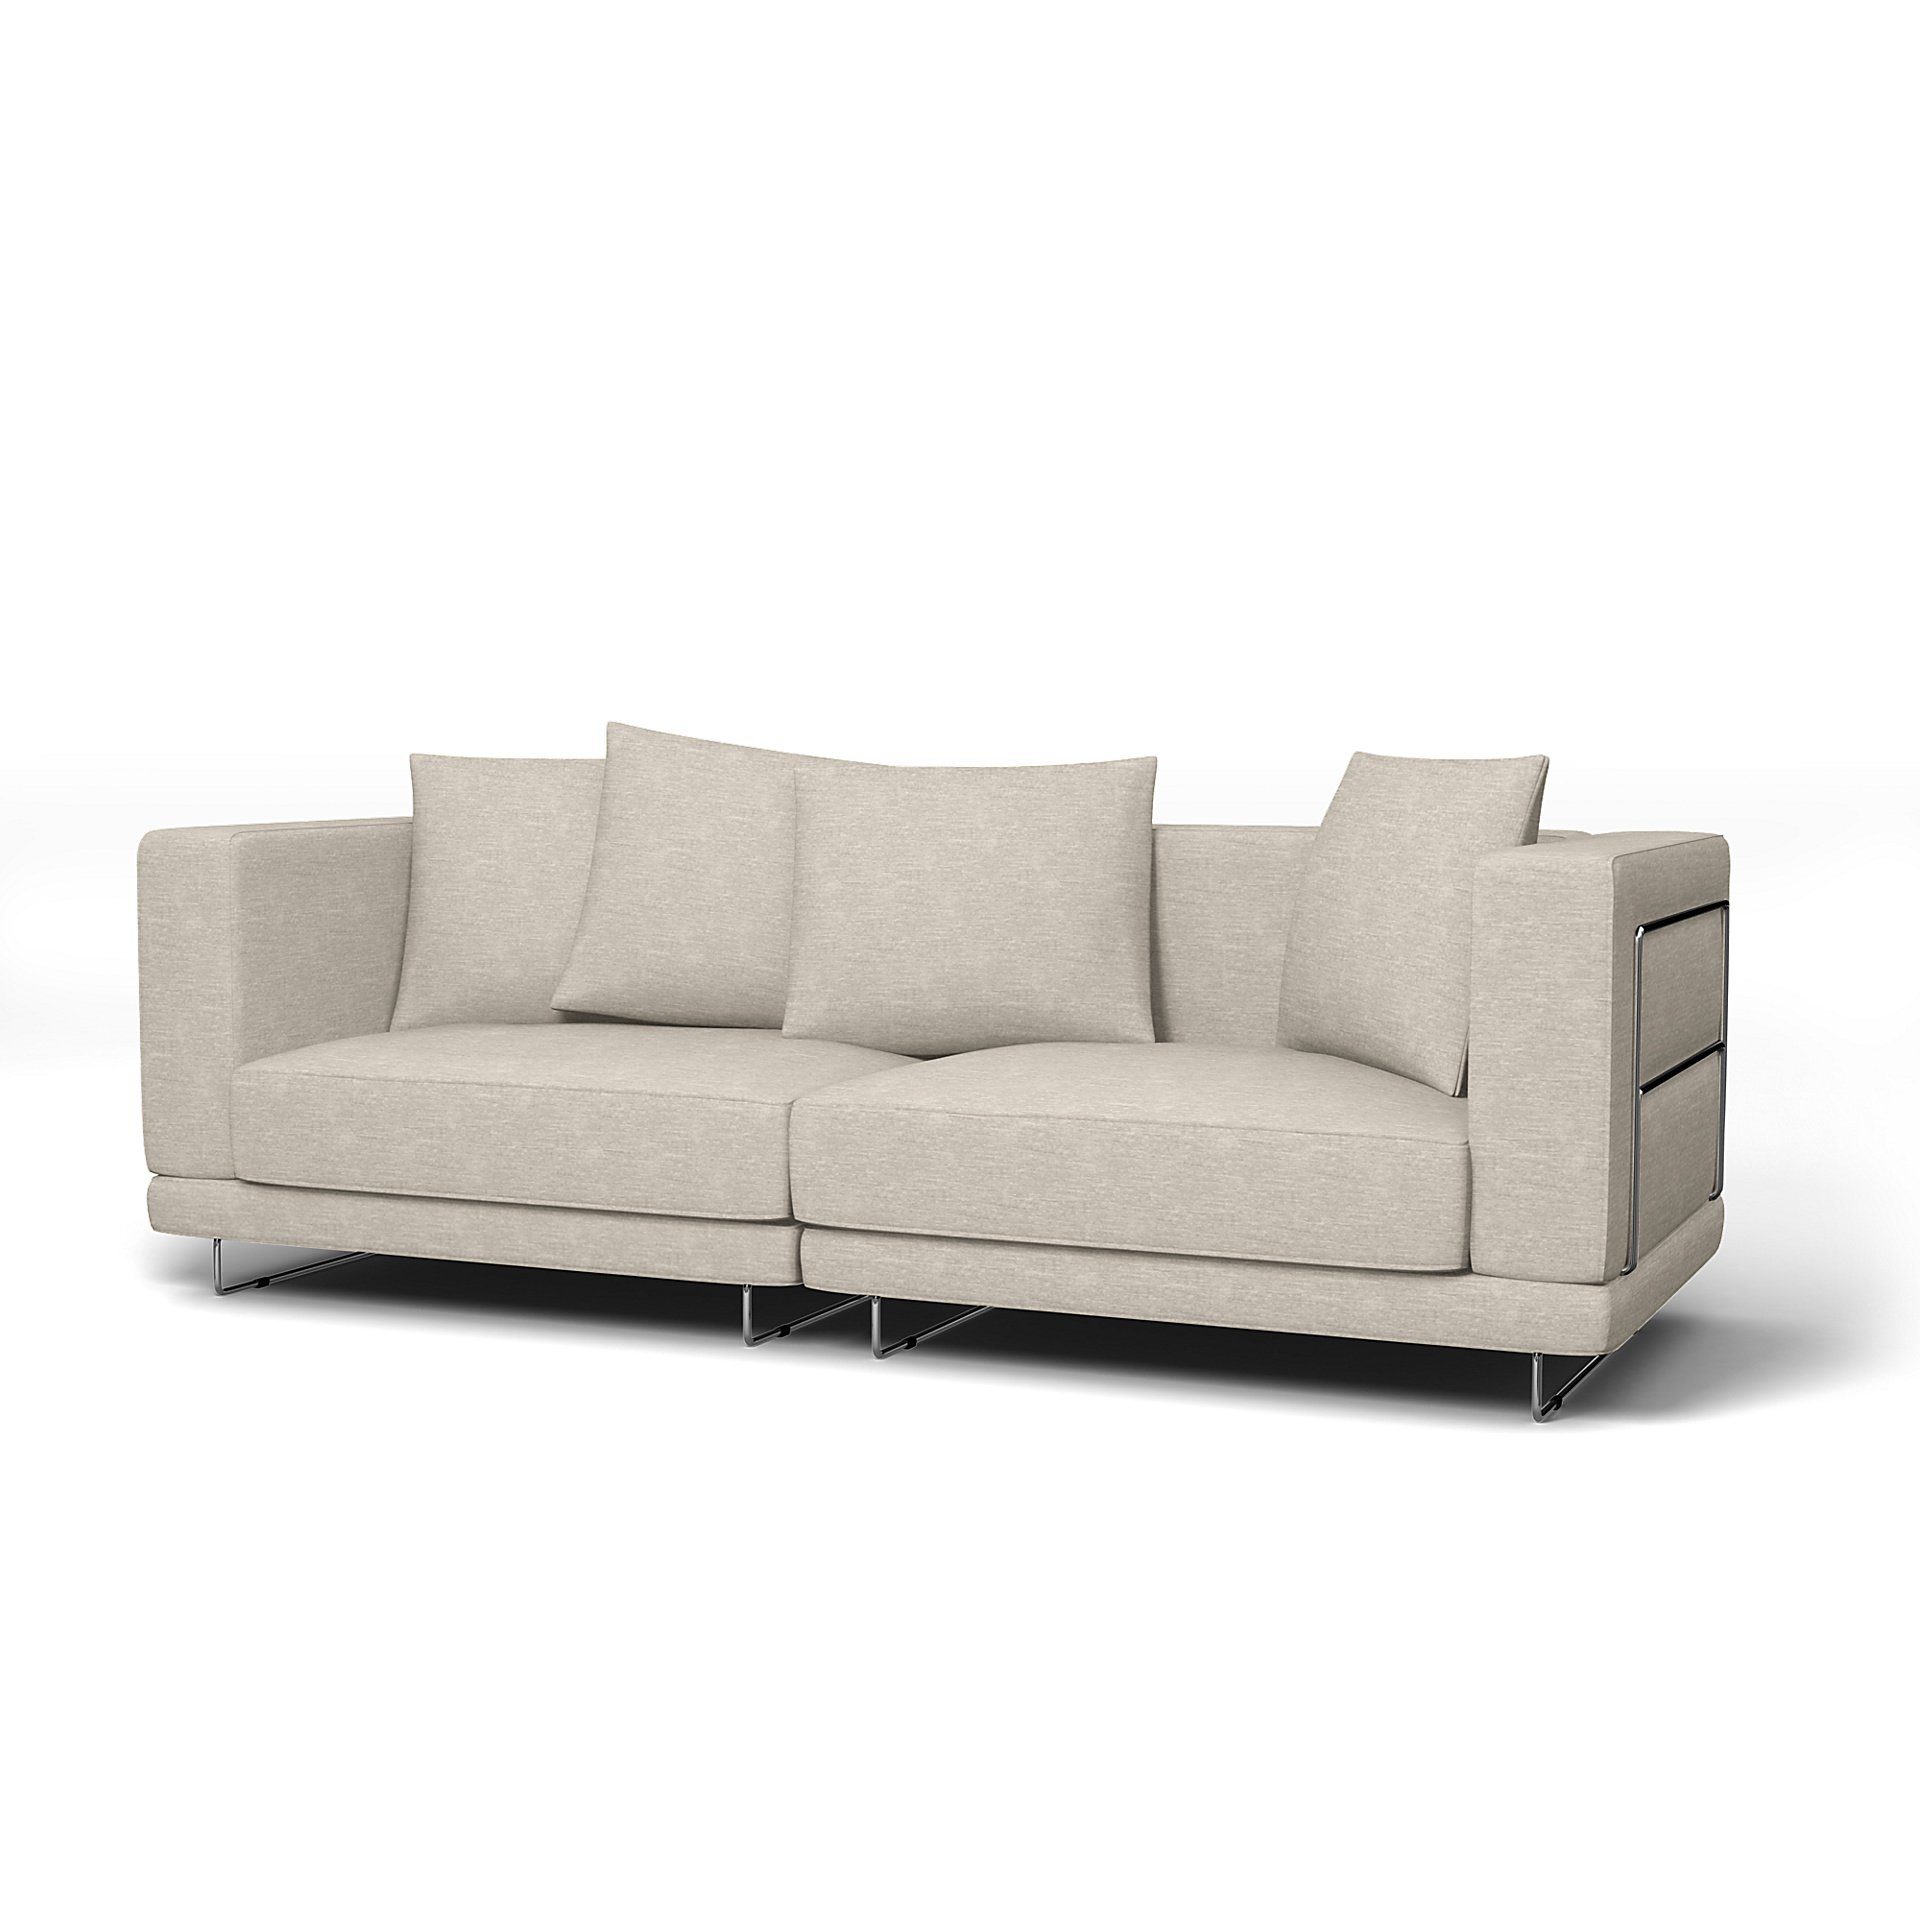 IKEA - Tylosand 3 Seater Sofa Cover, Natural White, Velvet - Bemz